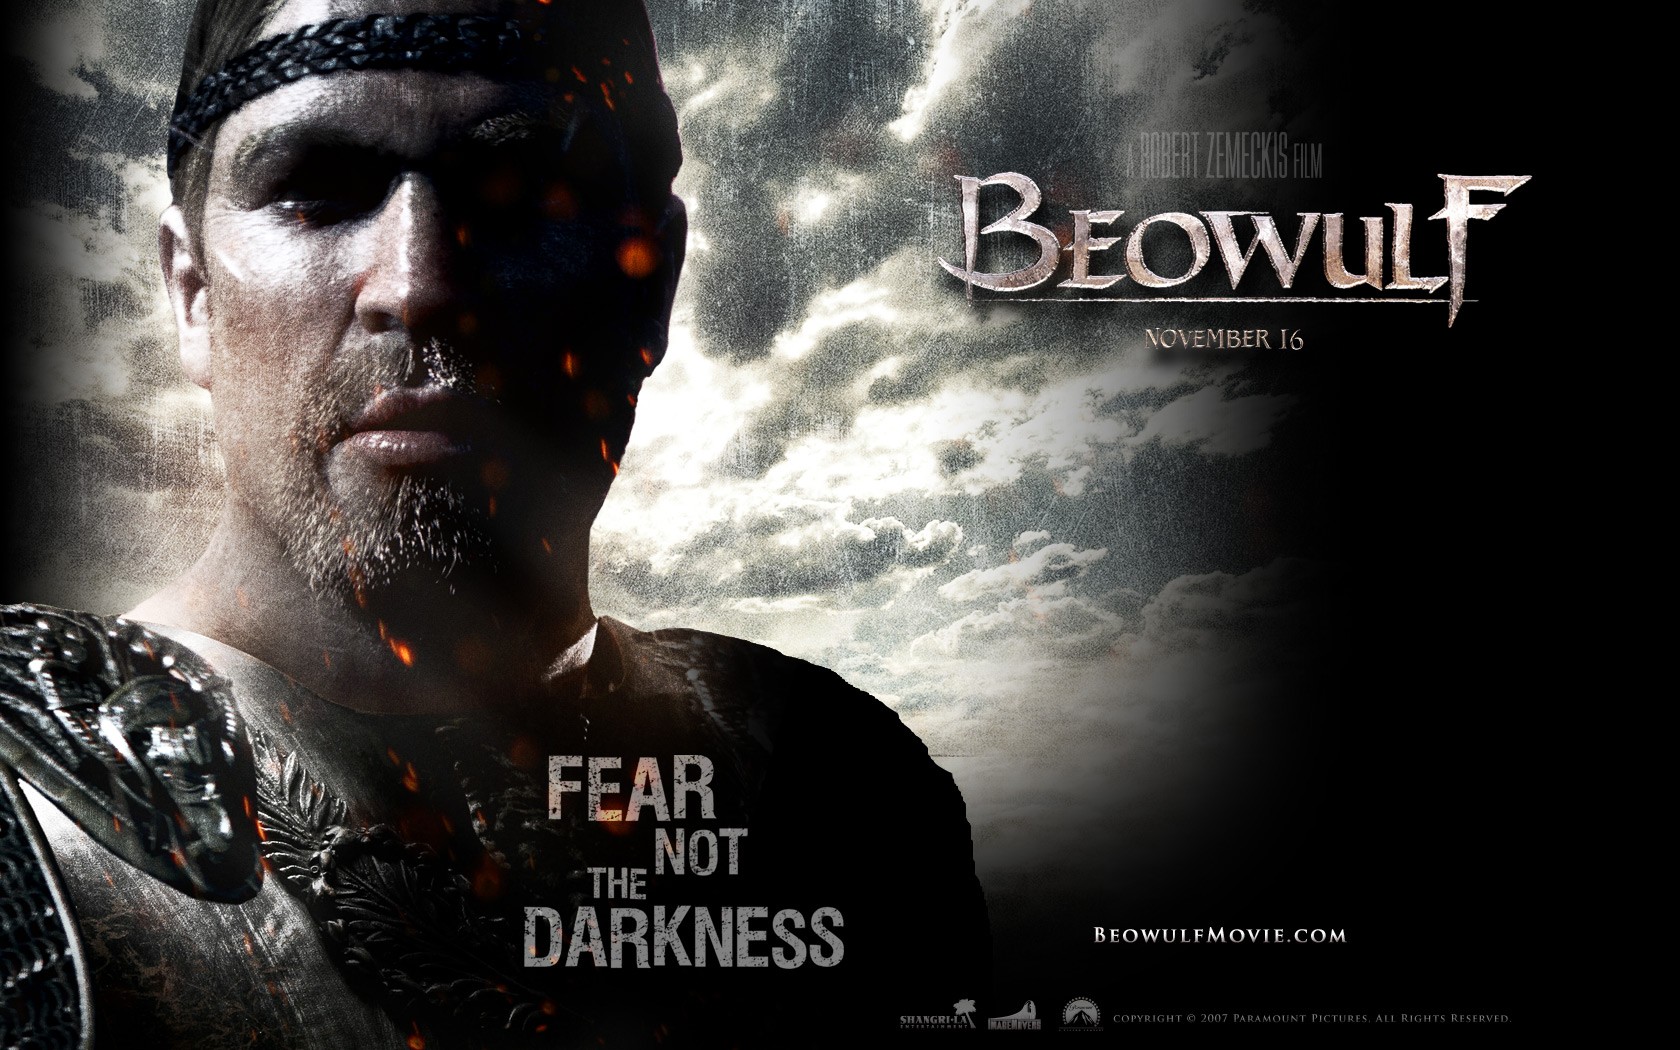 壁纸1680x1050电影壁纸 贝奥武夫 降龙伏魔 Beowulf 2007 贝奥武夫 北海的诅咒 贝奥武夫 电影壁纸 Movie Wallpaper Beowulf 2007壁纸 《贝奥武夫 Beowulf(2007)》壁纸 《贝奥武夫 Beowulf(2007)》图片 《贝奥武夫 Beowulf(2007)》素材 影视壁纸 影视图库 影视图片素材桌面壁纸